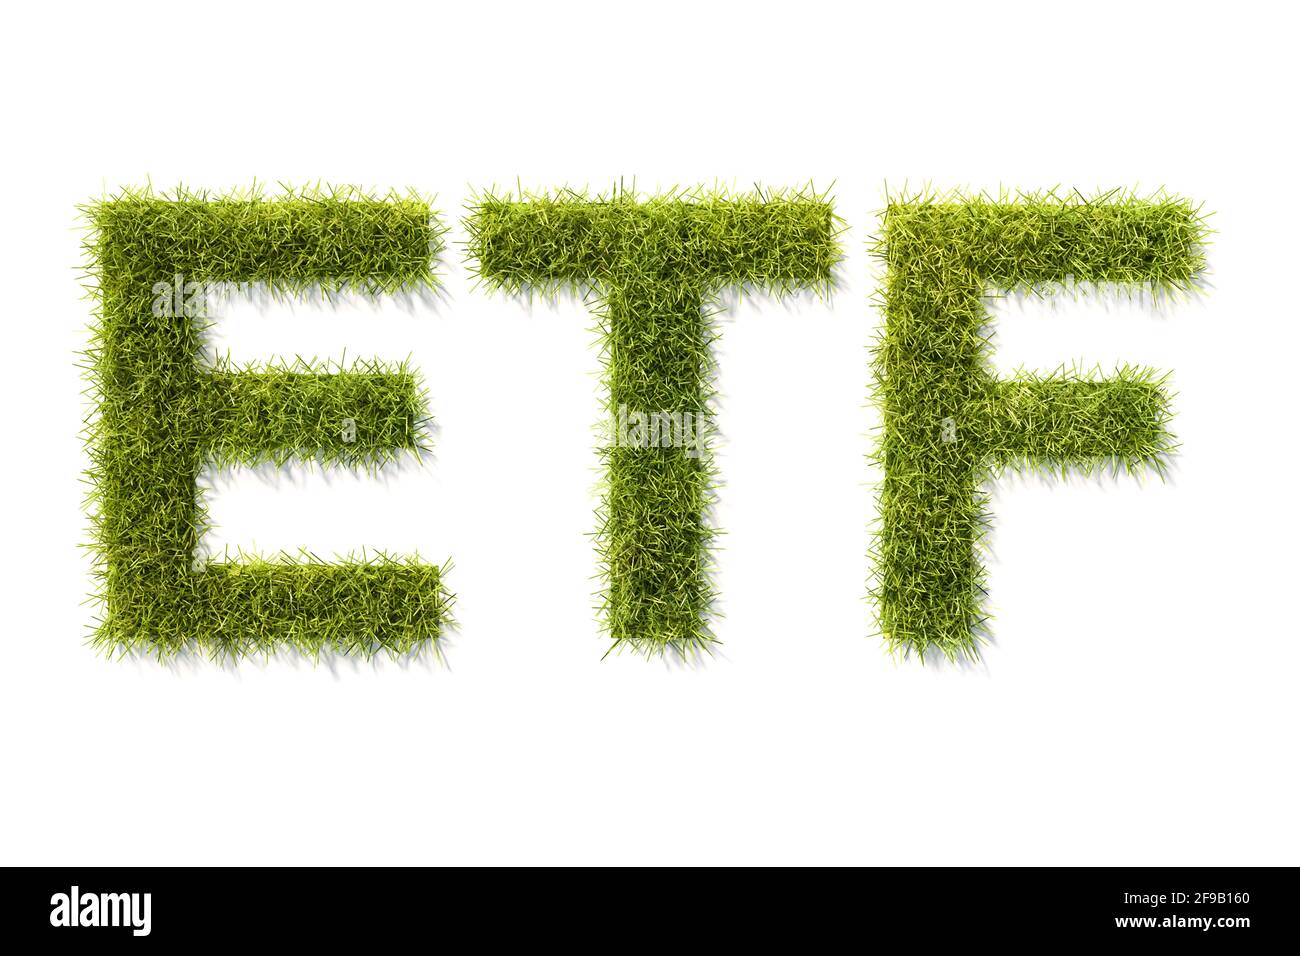 Le lettere verdi in erba ETF sono isolate su bianco con ombra. Concetto per i fondi scambiati Exchange che investono secondo gli standard ESG (governance sociale ambientale). Foto Stock